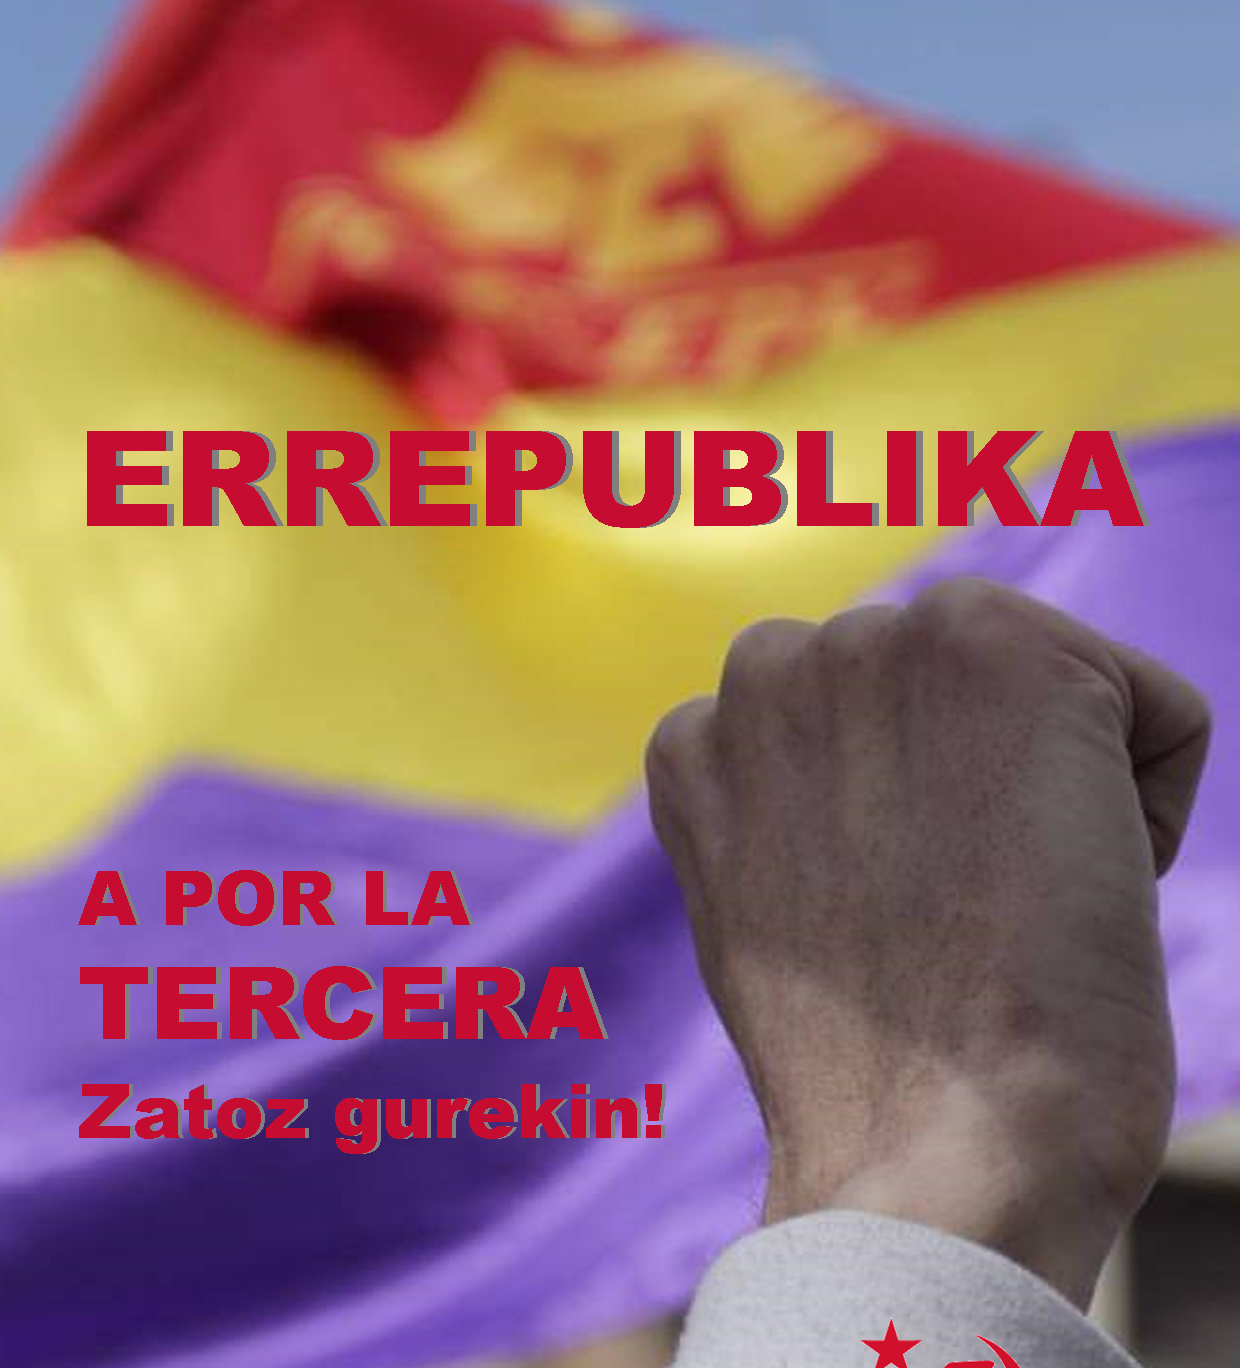 El Partido Comunista de Euskadi-EPK pide a la ciudadanía vasca mostrar su rechazo a la monarquía corrupta el próximo 14 de Abril desde ventanas y en las redes sociales.